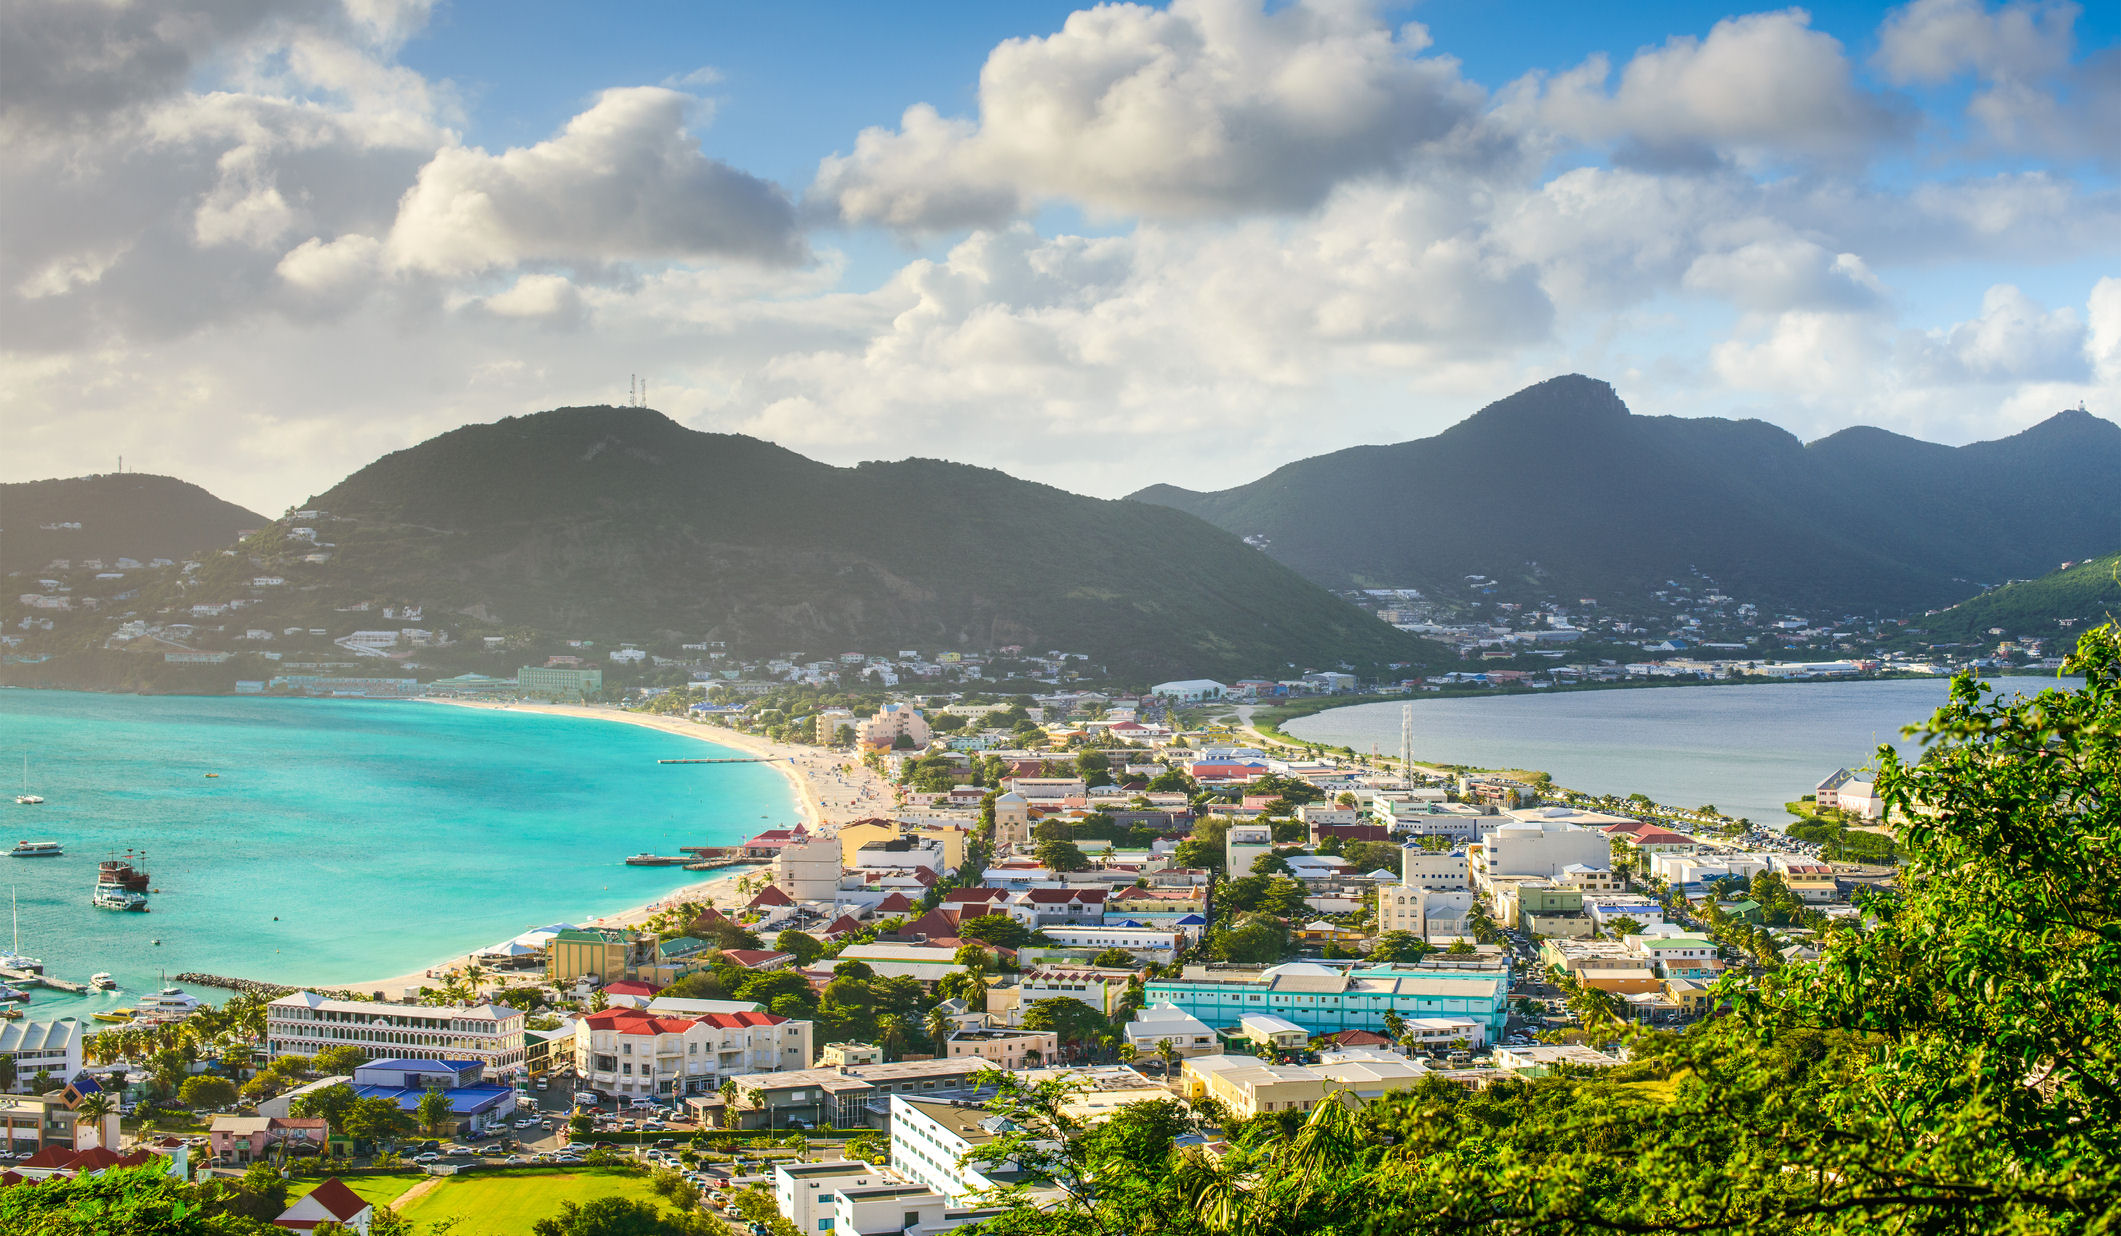 The island of St. Maarten